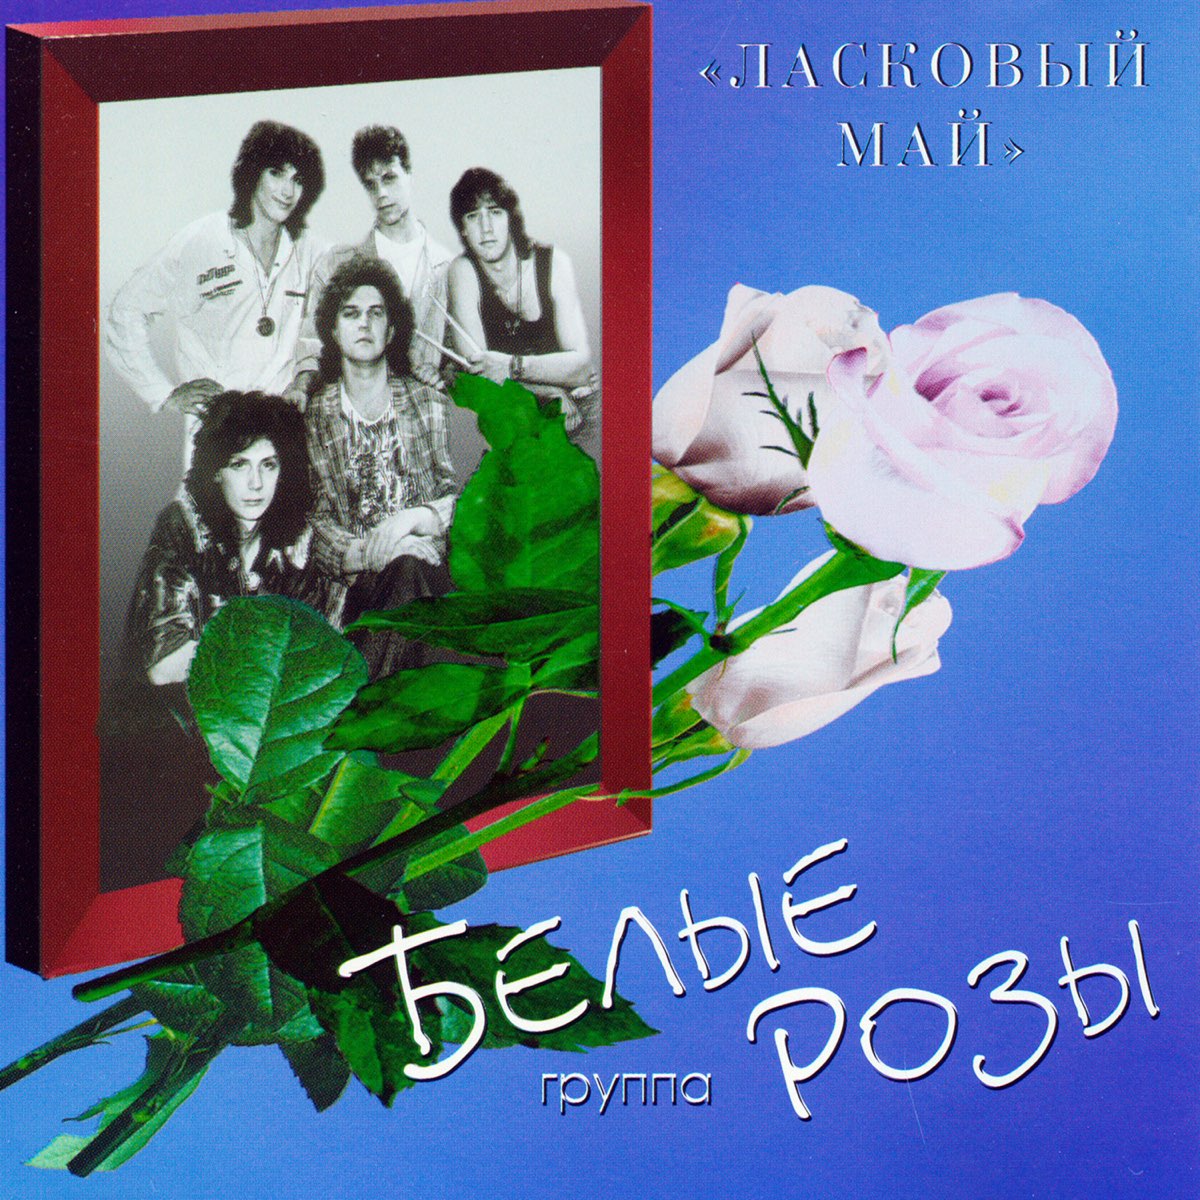 Альбомы 1 мая. Ласковый май белые розы 1989. Группа белые розы - ласковый май 1989. Белые розы 1989 альбом.